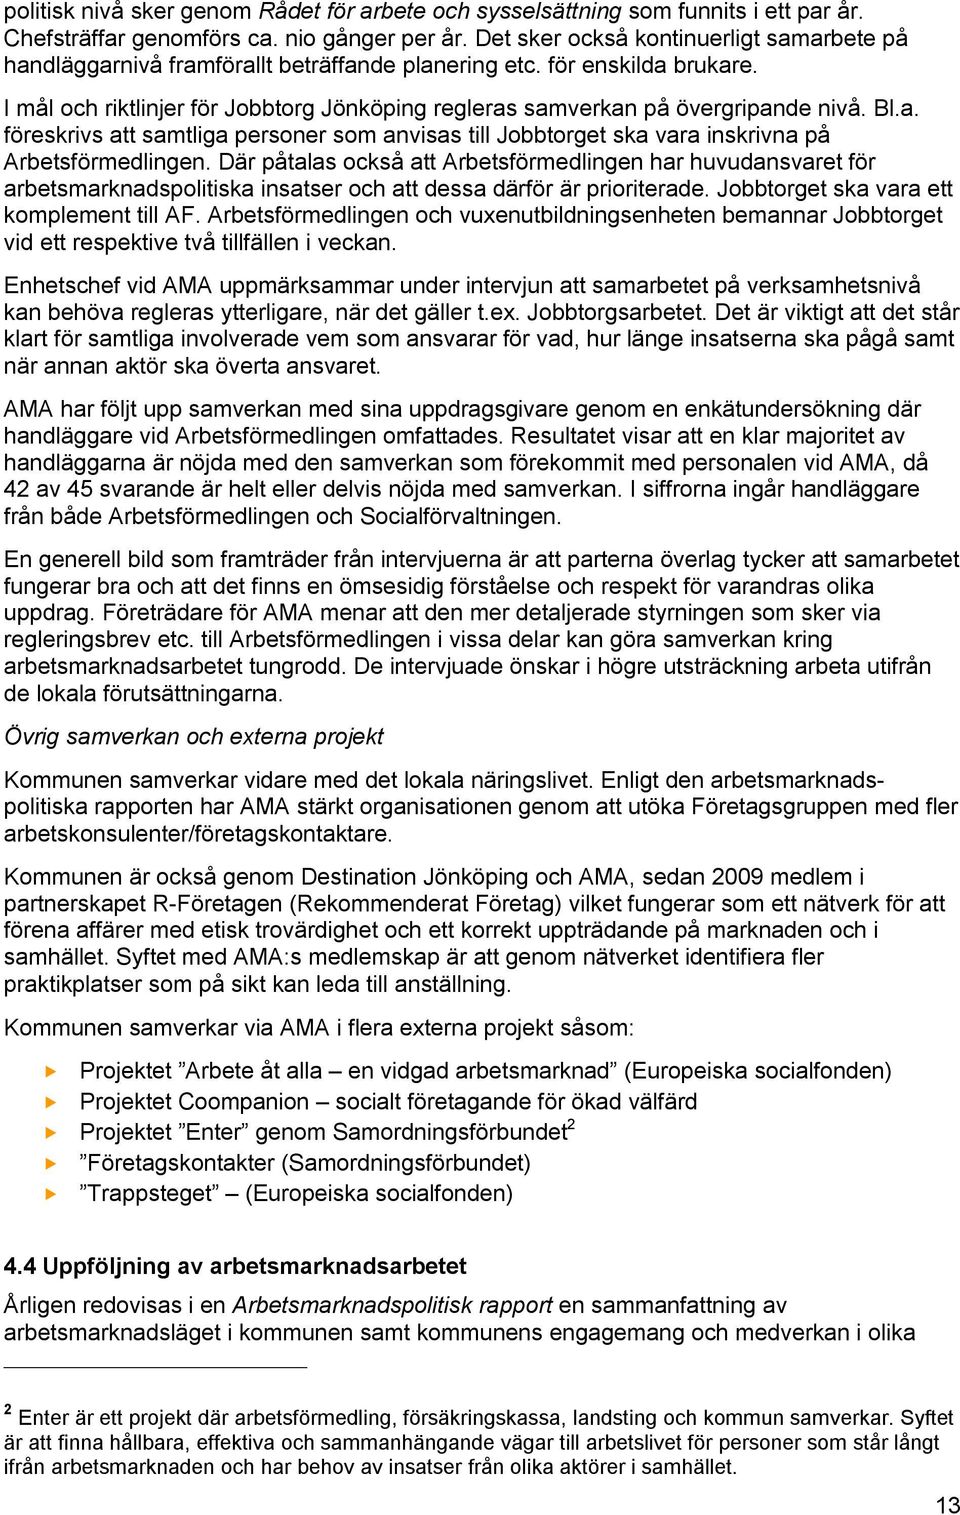 I mål och riktlinjer för Jobbtorg Jönköping regleras samverkan på övergripande nivå. Bl.a. föreskrivs att samtliga personer som anvisas till Jobbtorget ska vara inskrivna på Arbetsförmedlingen.